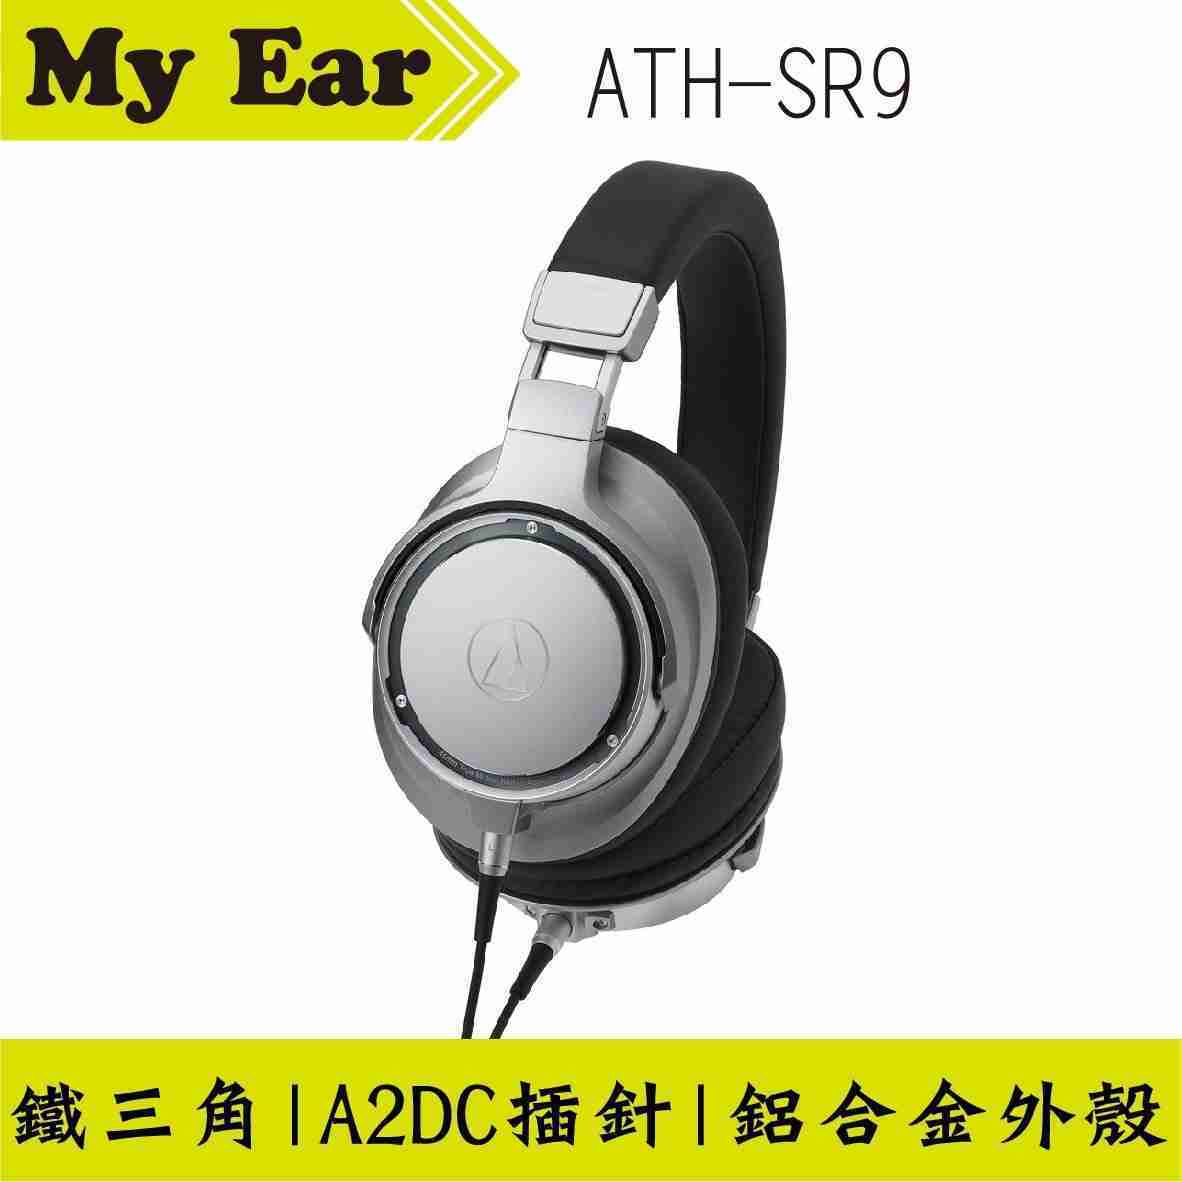 鐵三角  ATH-SR9 高階耳罩式耳機 Hi-Res | My Ear 耳機專門店